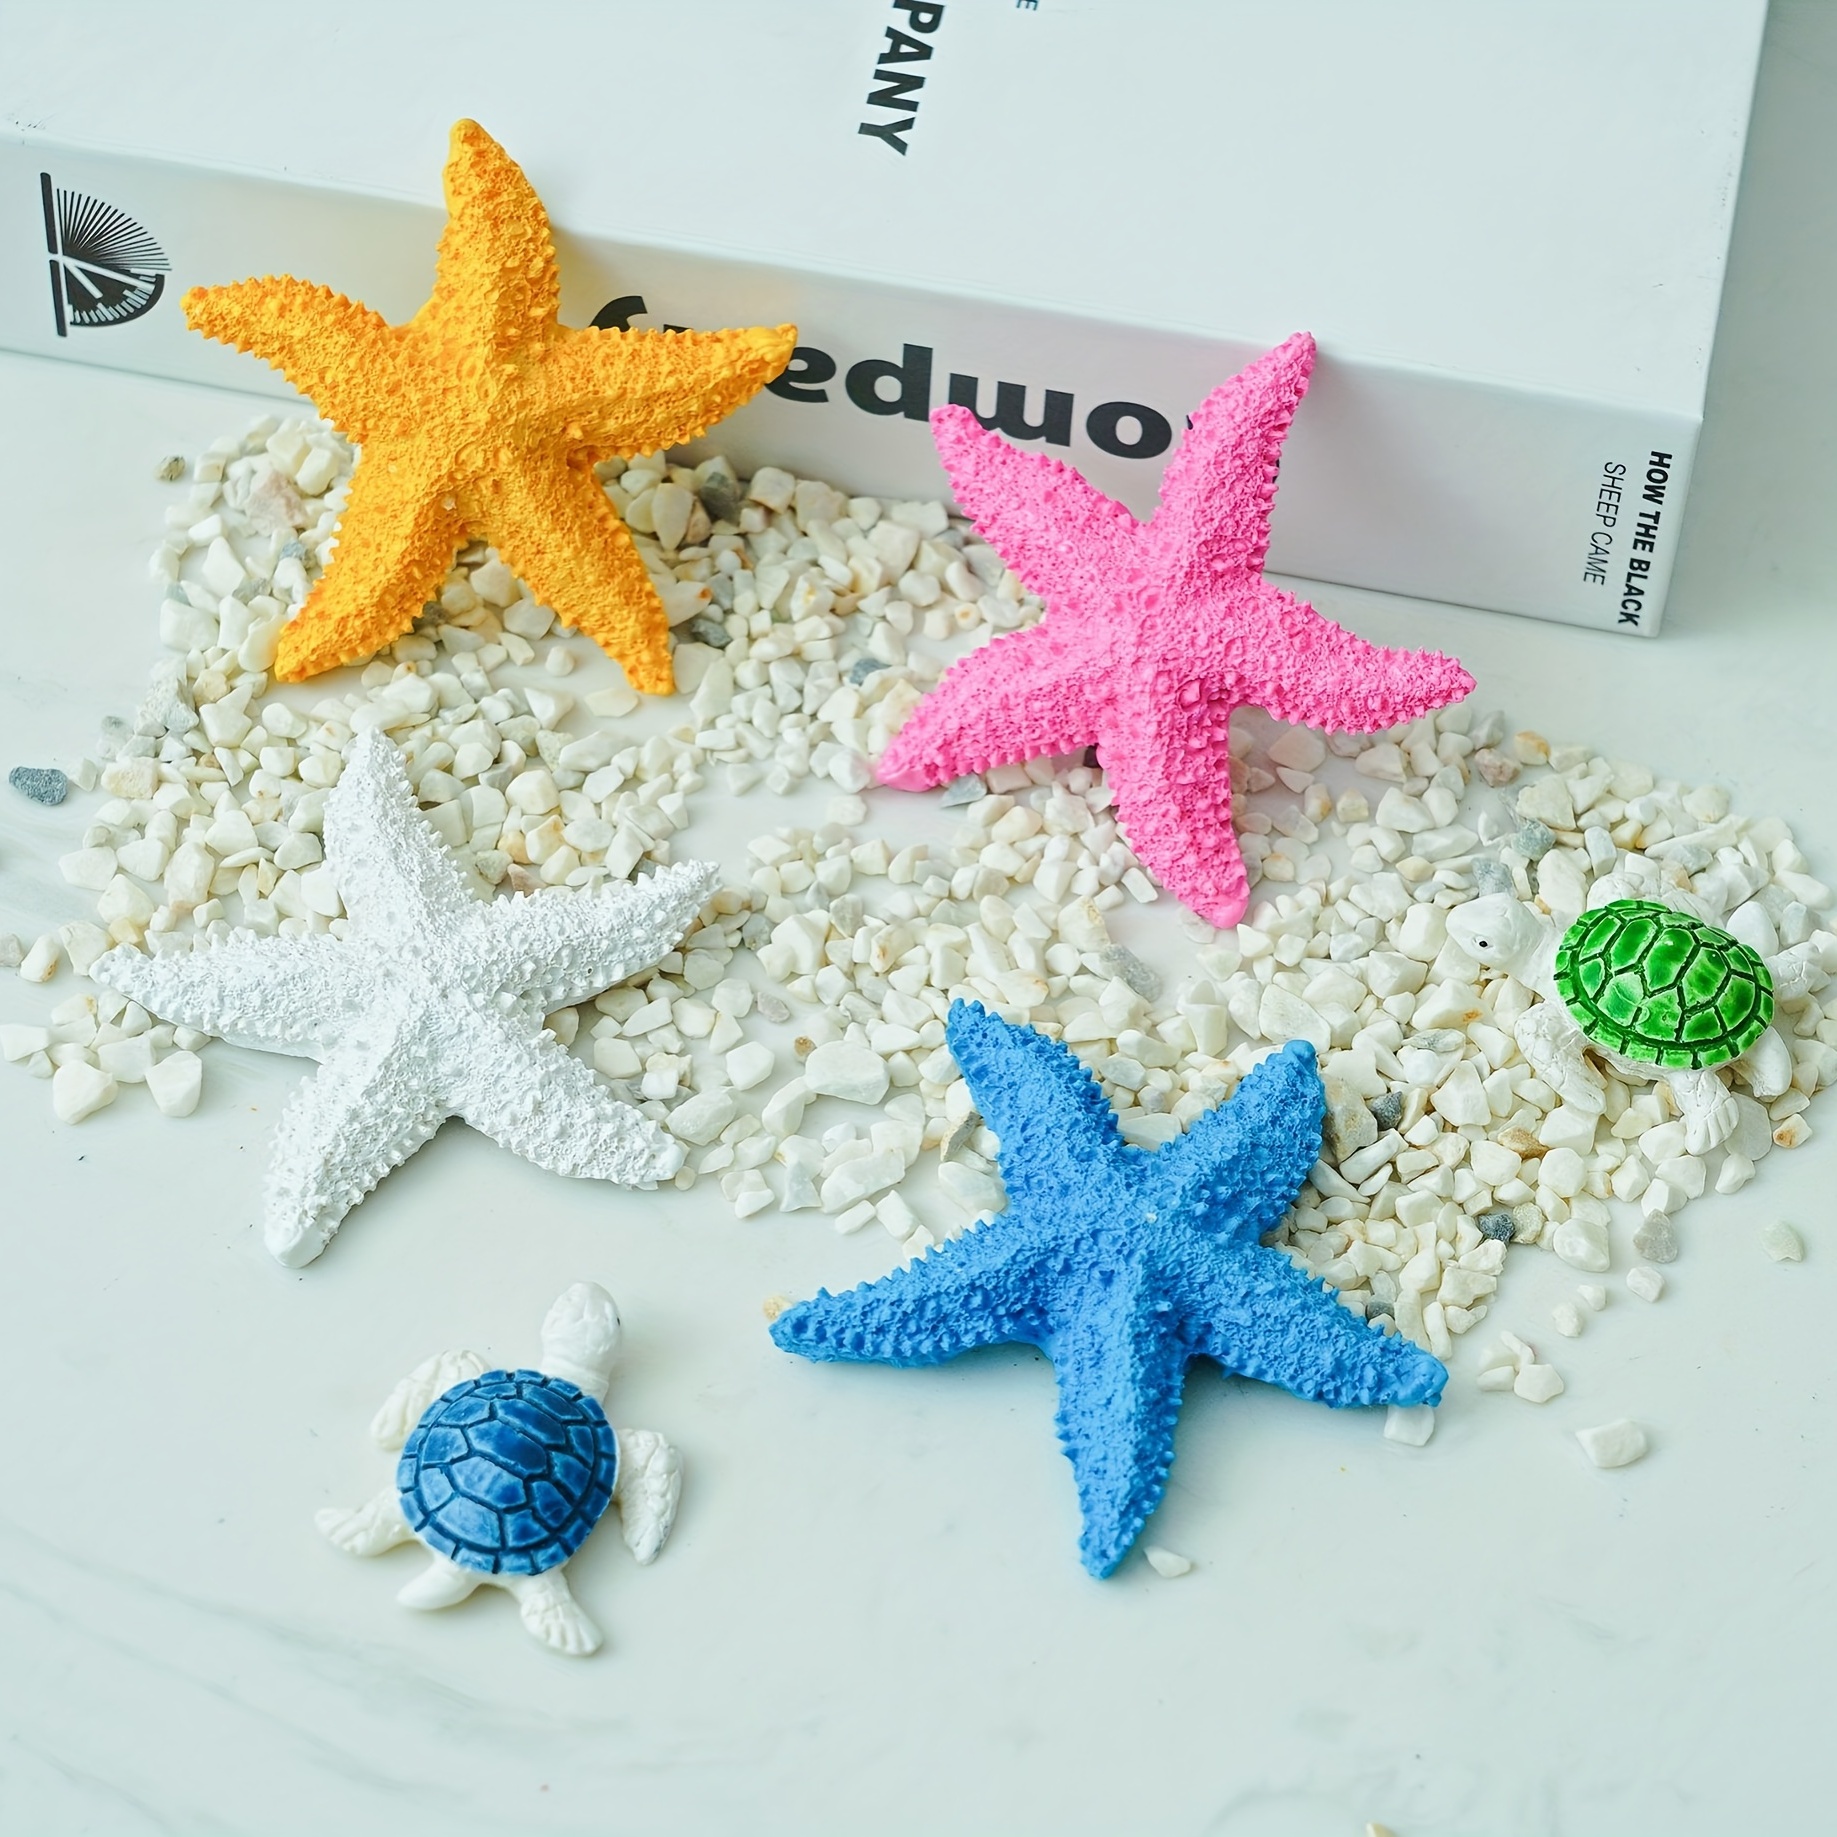 Decoración de estrella de mar – Paquete de 10 estrellas de mar surtidas de  2 a 6 pulgadas – Estrellas de mar para manualidades, decoración de pared de